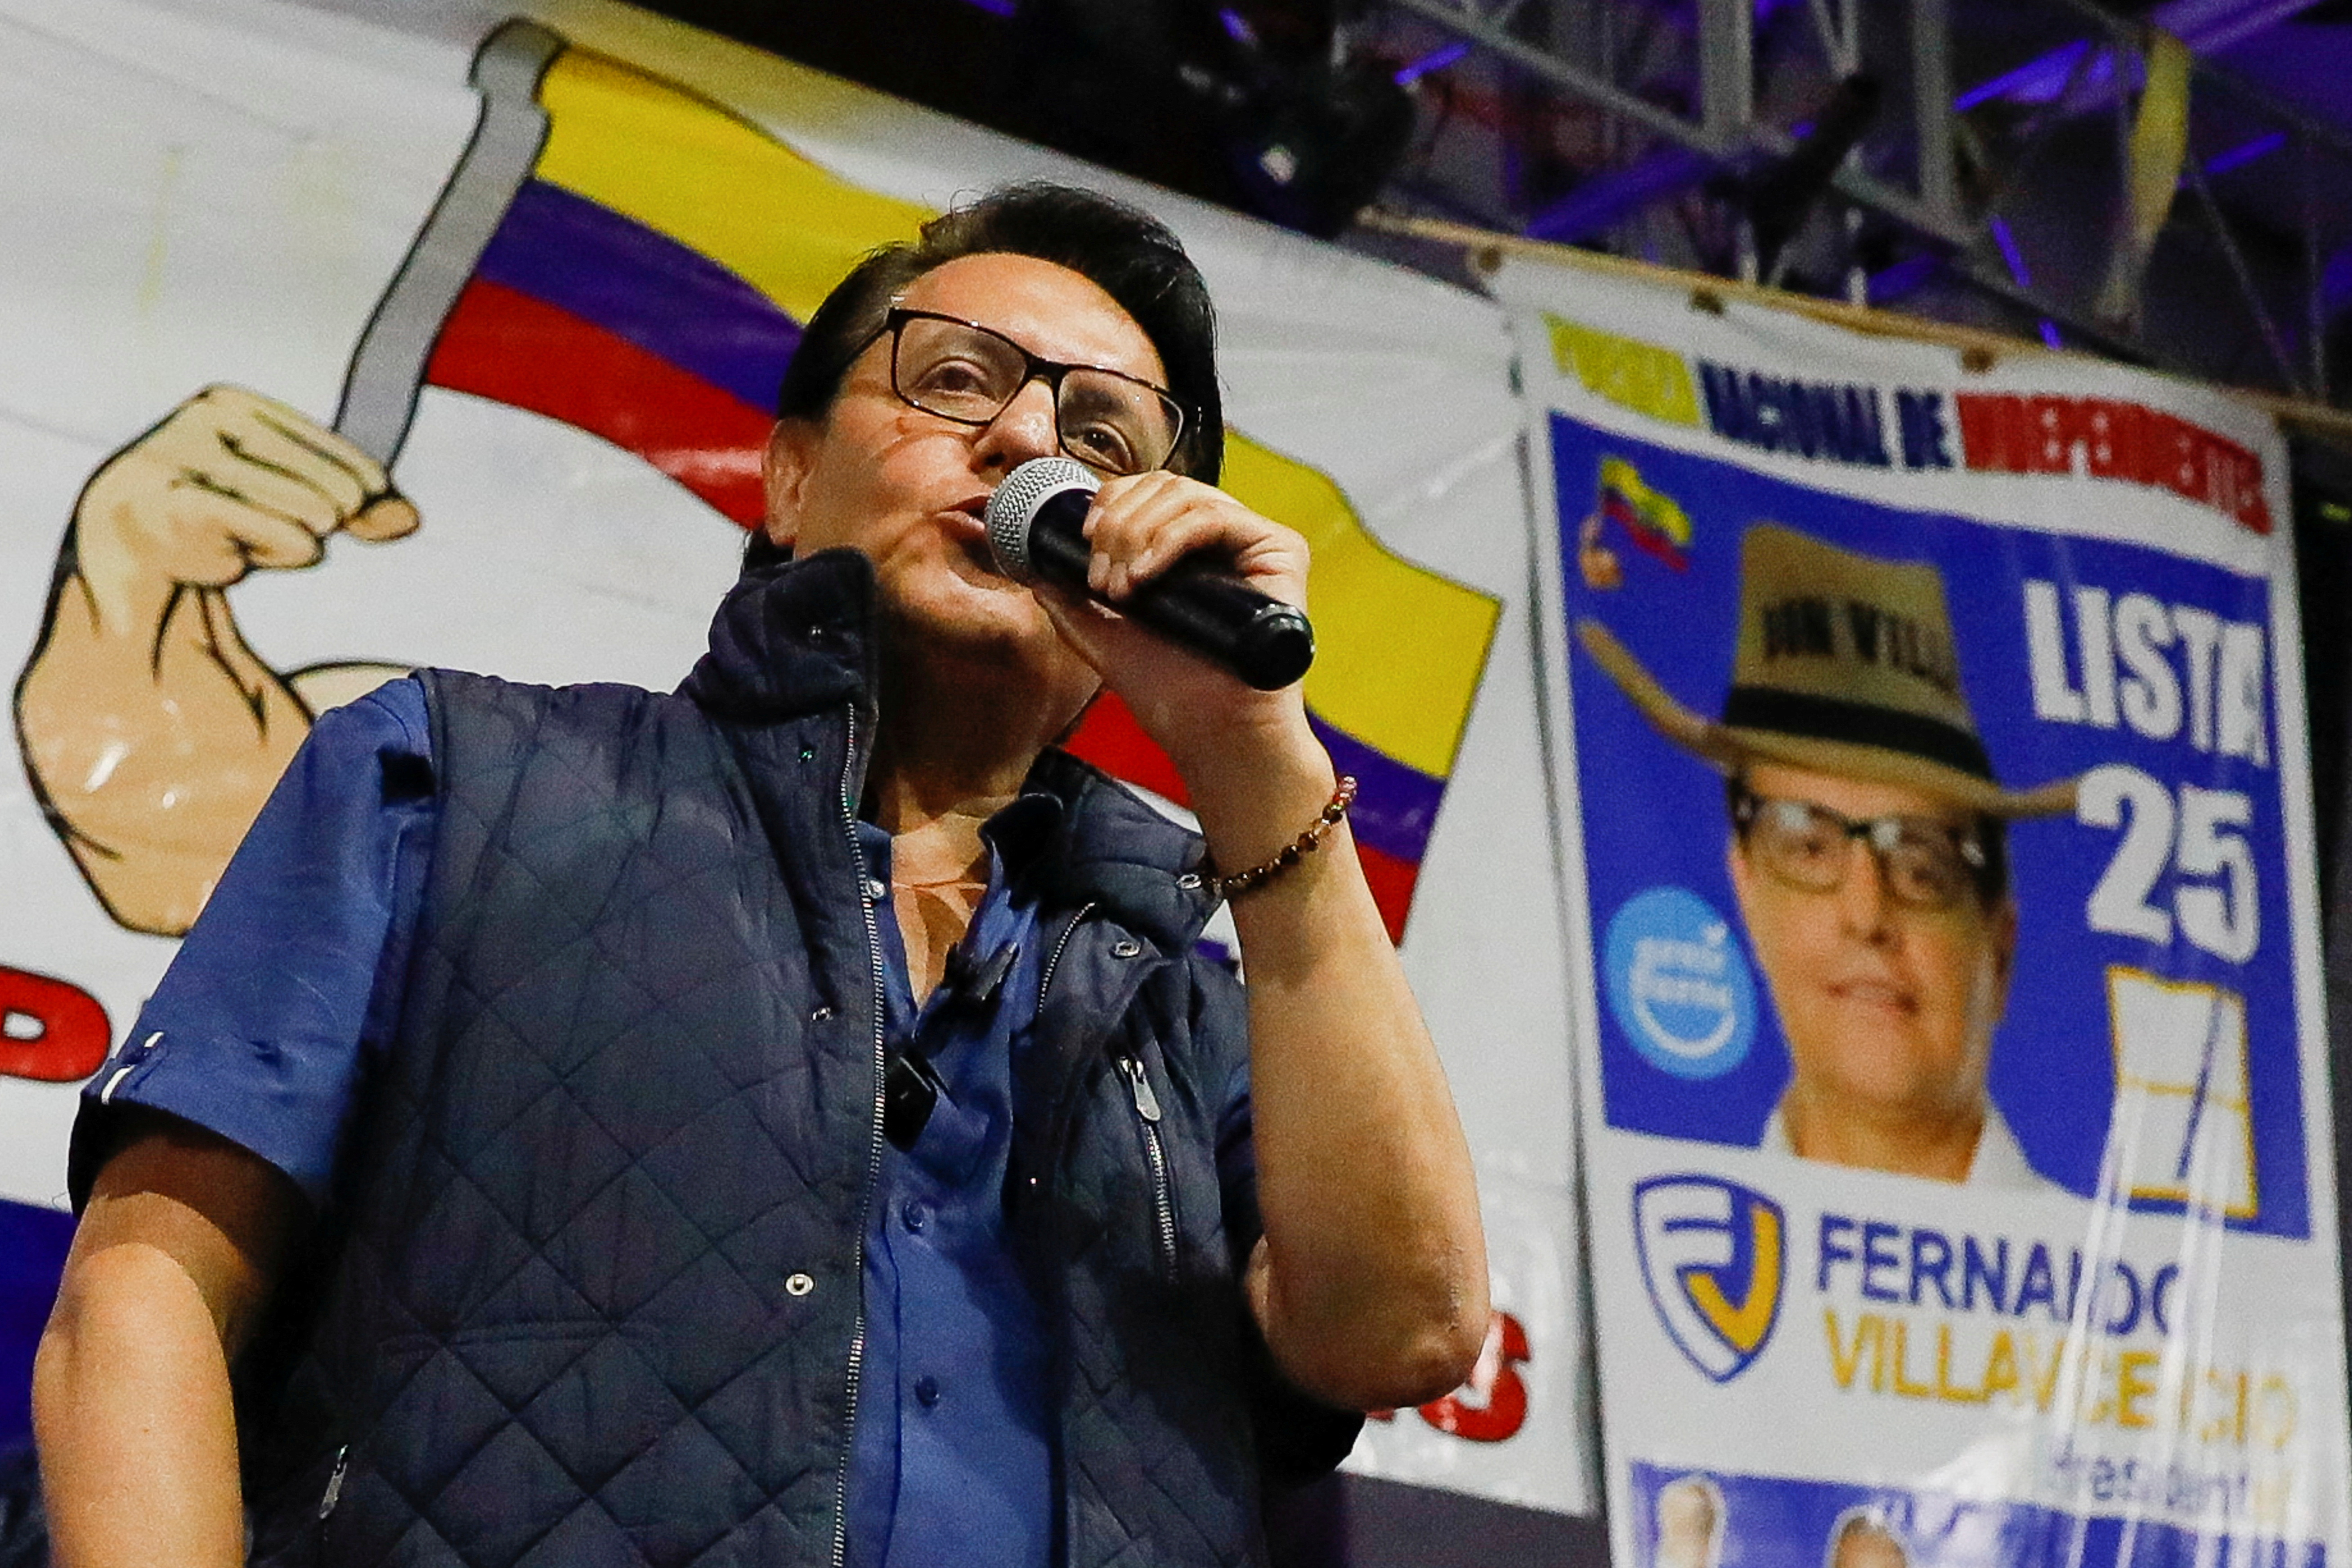 Der ecuadorianische Präsidentschaftskandidat Fernando Villavicencio spricht während einer Wahlkampfveranstaltung in Quito, Ecuador, am 9. August